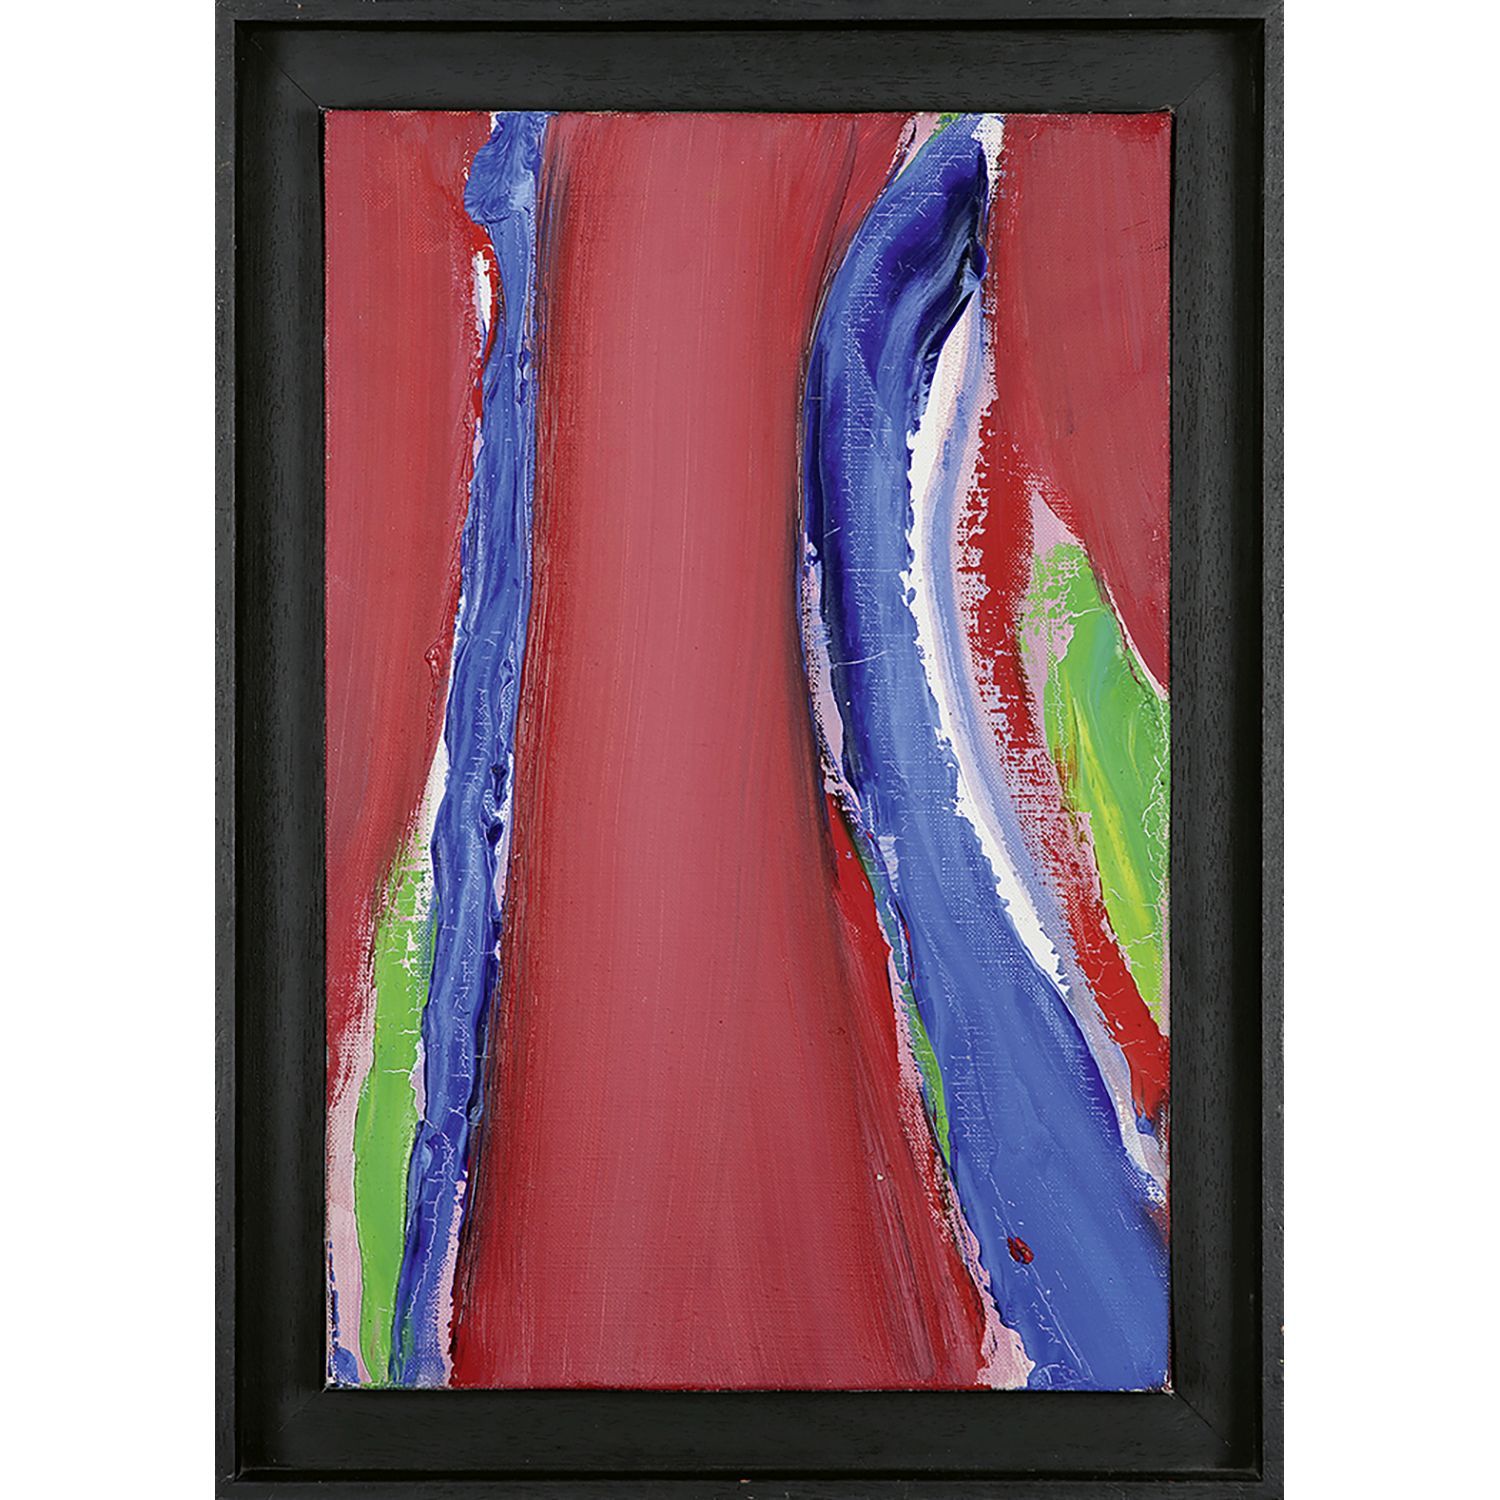 Null 奥利维耶-德布雷(1920-1999)
小马杜赖红、蓝、绿线, 1989年
布面油画
背面有签名、标题和日期 
布面油画；背面有签名、标题和日期
41&hellip;